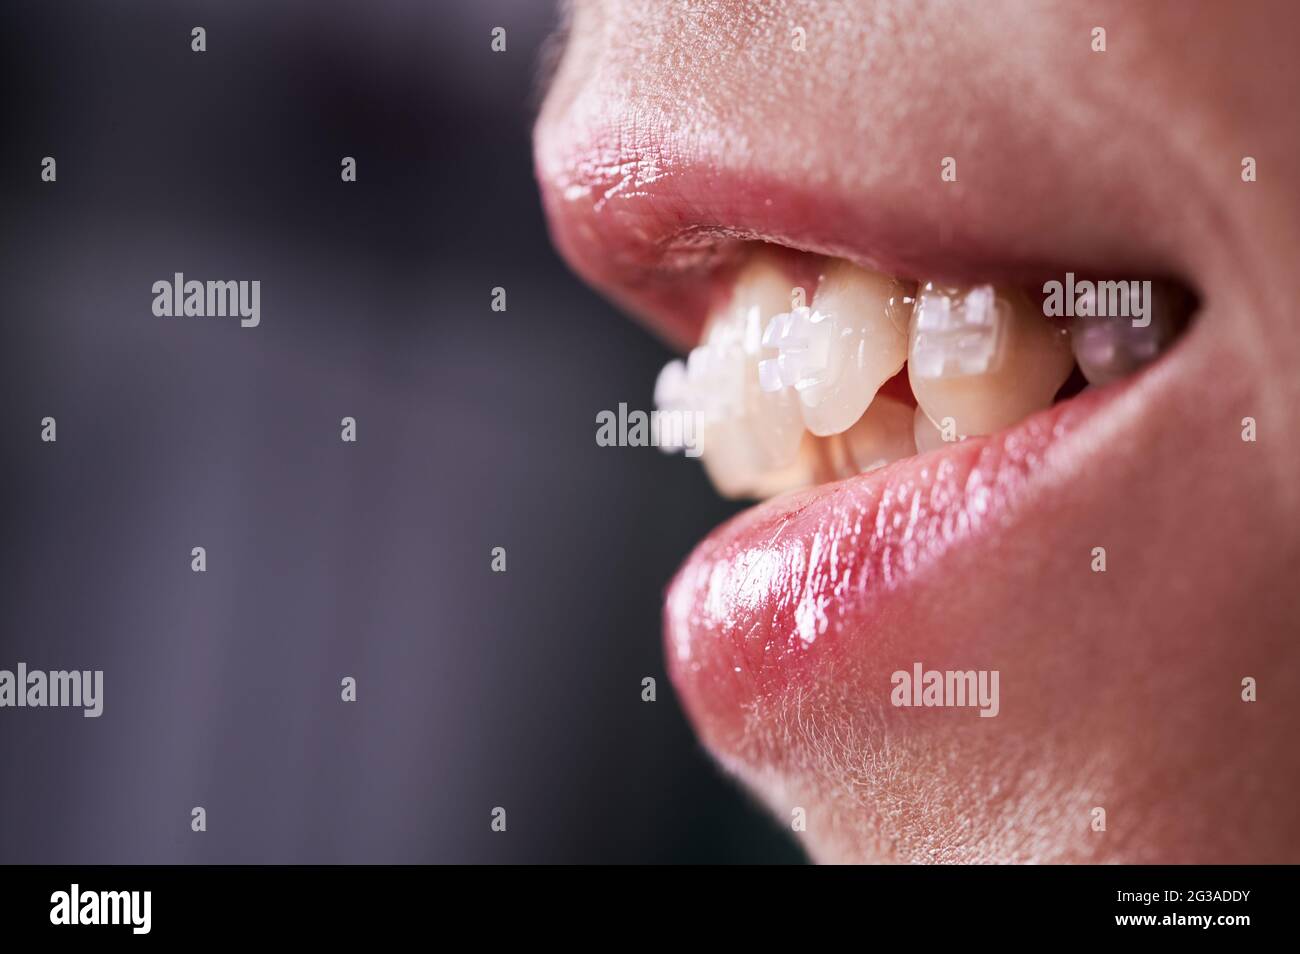 Gros plan d'une femme souriante à la bouche ouverte montrant des dents blanches avec des supports orthodontiques. Traitement des prothèses dentaires pour les femmes. Concept de traitement orthodontique et de stomatologie. Banque D'Images